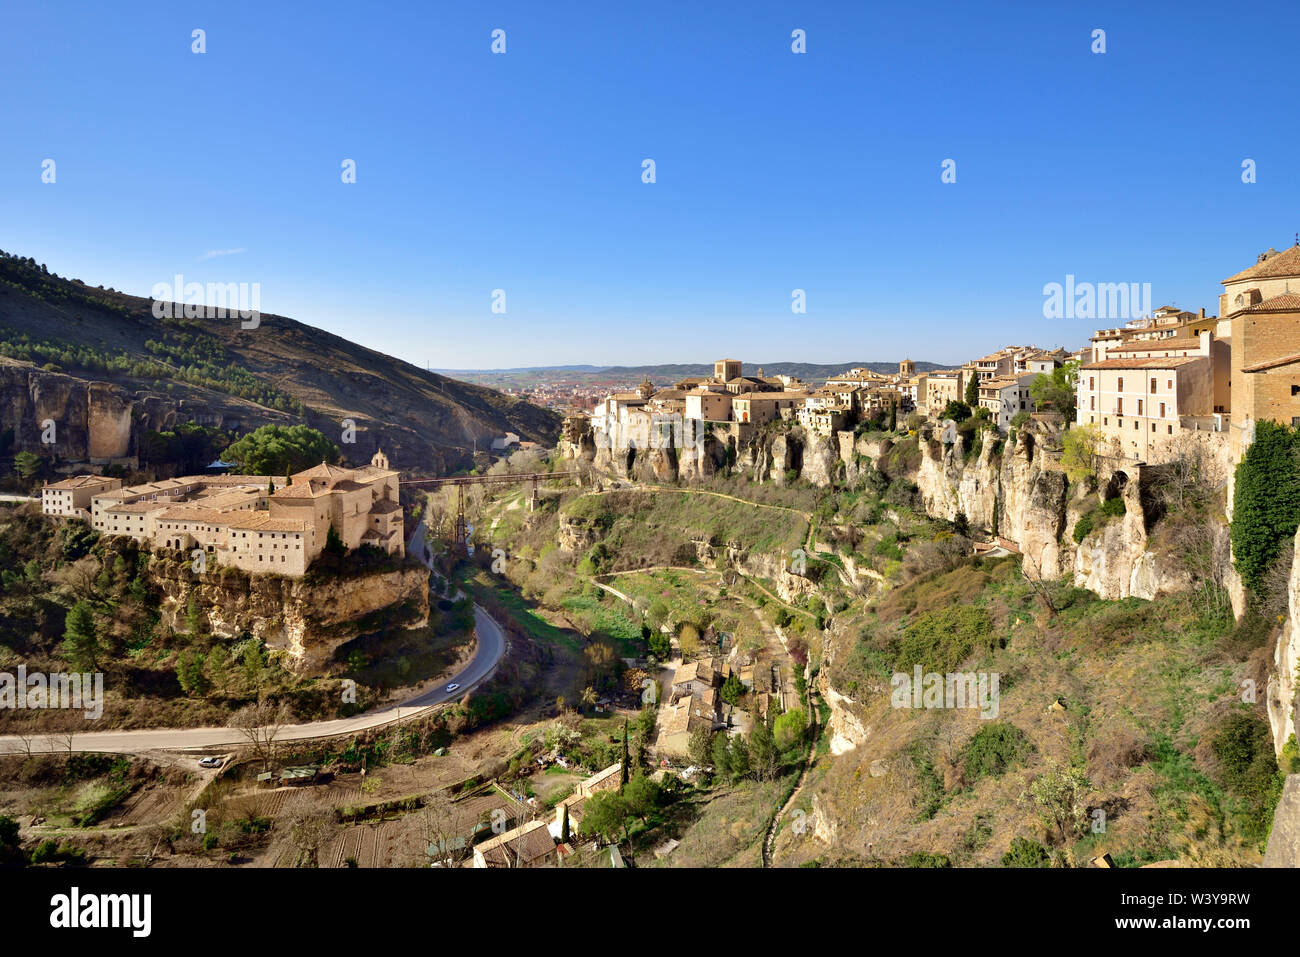 Die ummauerte Stadt Cuenca, die zum Weltkulturerbe der Unesco gehört. Castilla la Mancha, Spanien Stockfoto